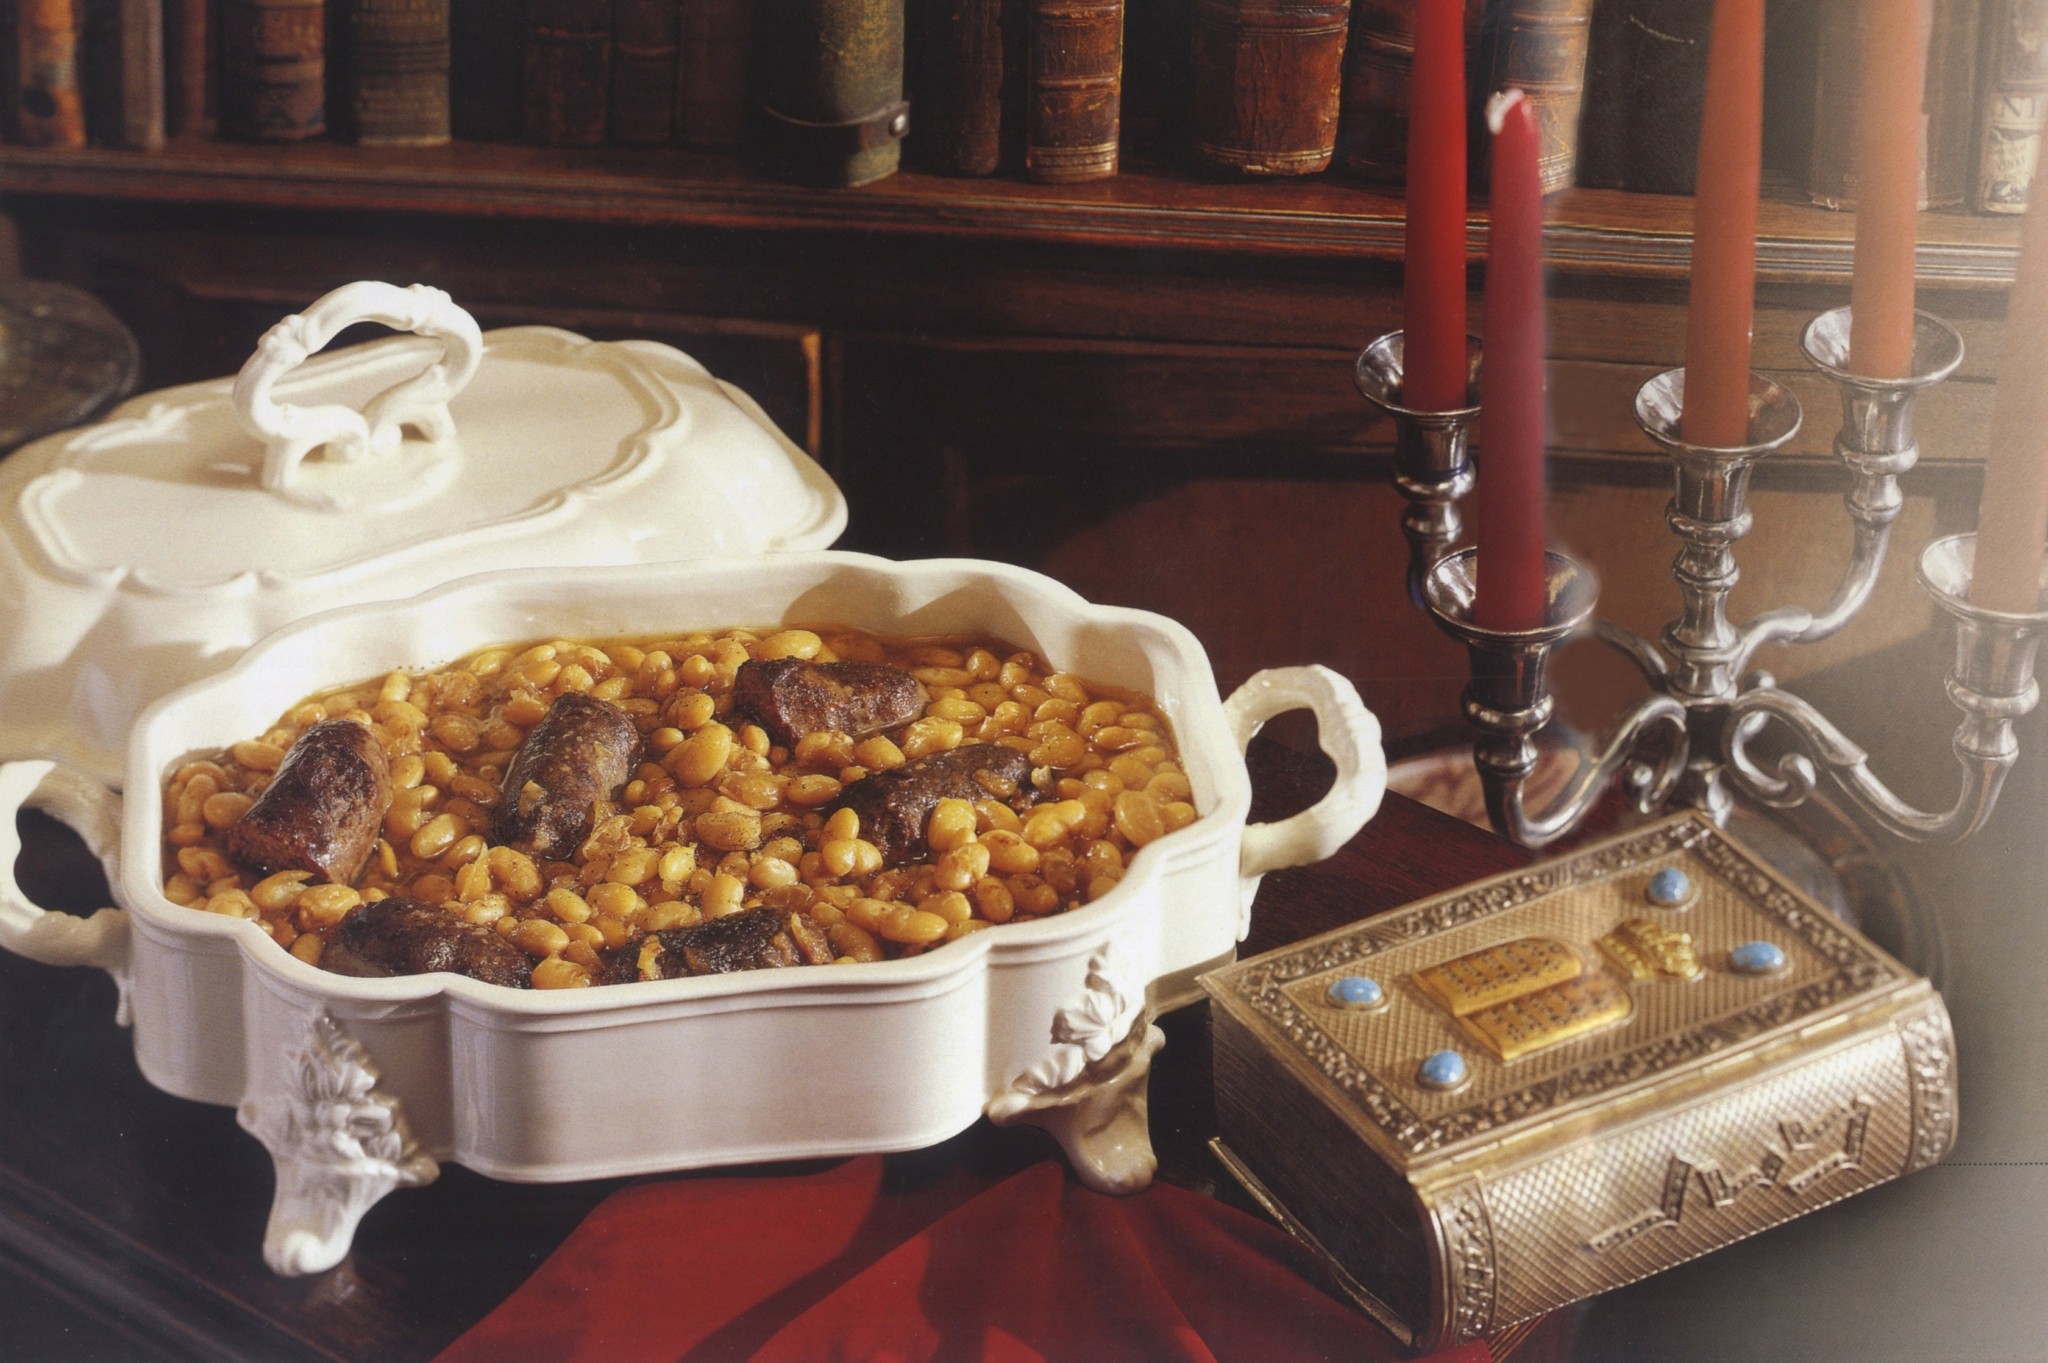 Η κουζίνα των Εβραίων της Θεσσαλονίκης – Οι Σεφαραδίτικες συνταγές από τον μεγάλο γευσιγνώστη με το ψευδώνυμο “Επίκουρος”